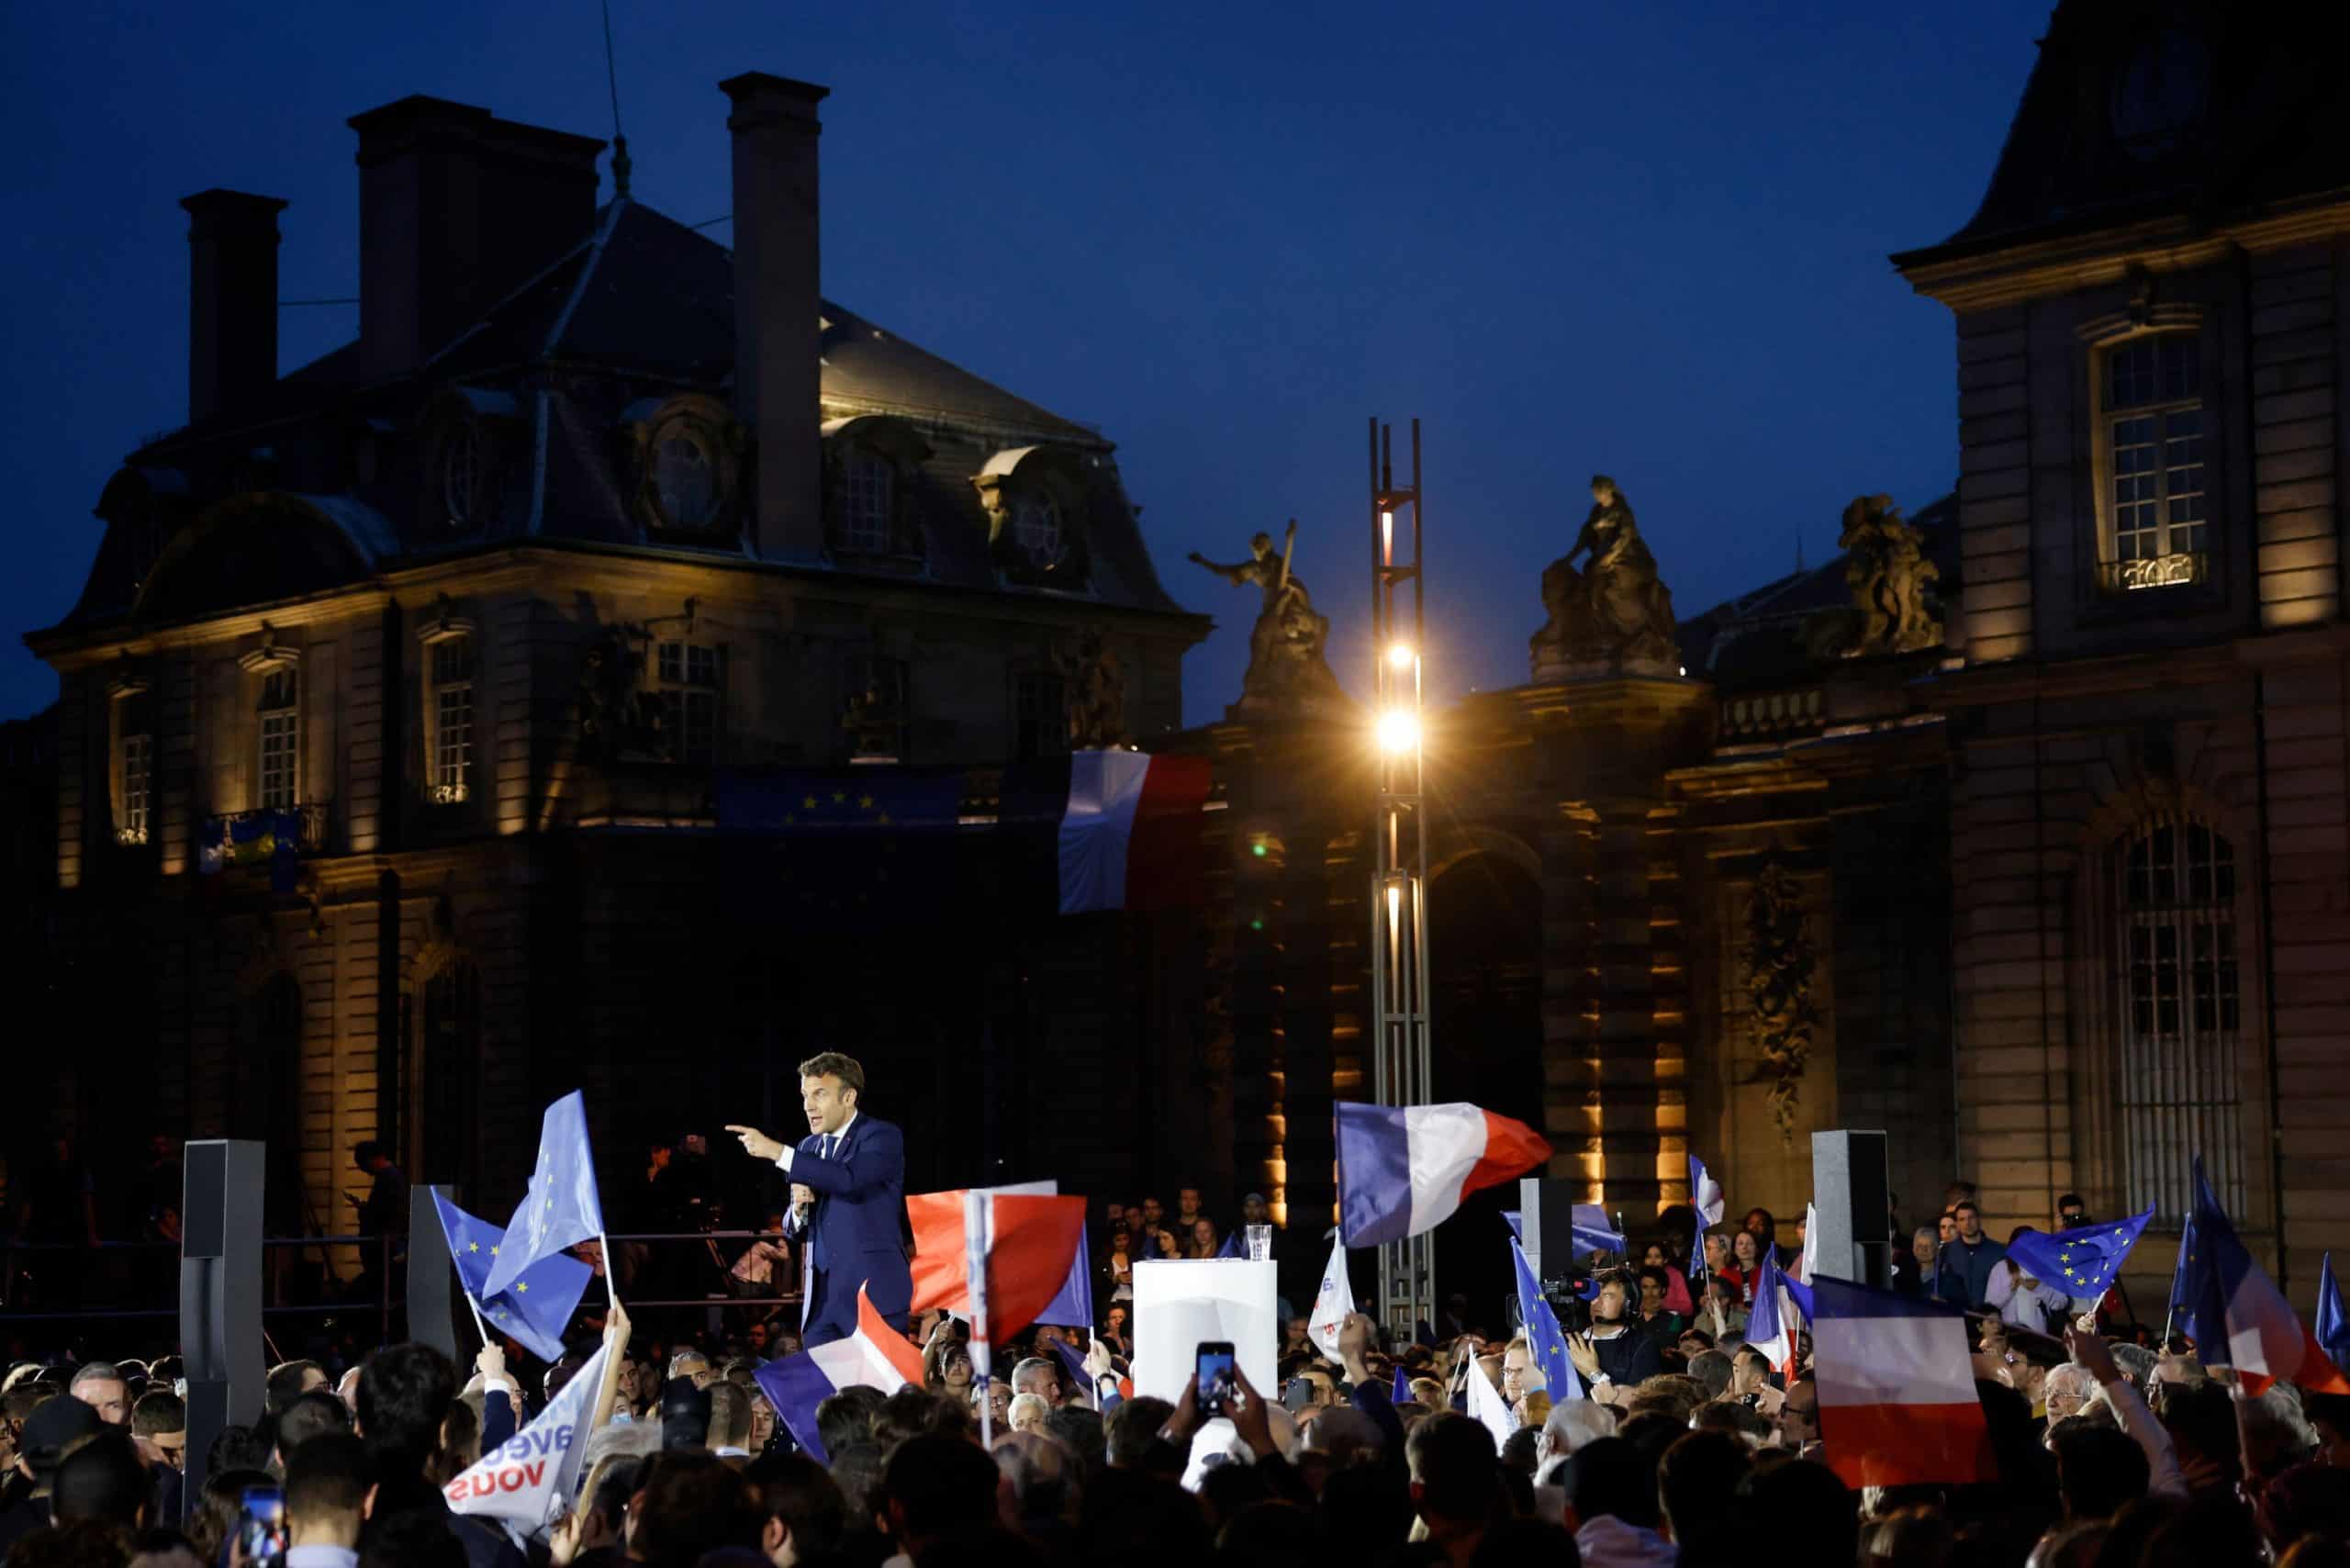 Macron declares election battle with Le Pen France’s ‘European referendum’